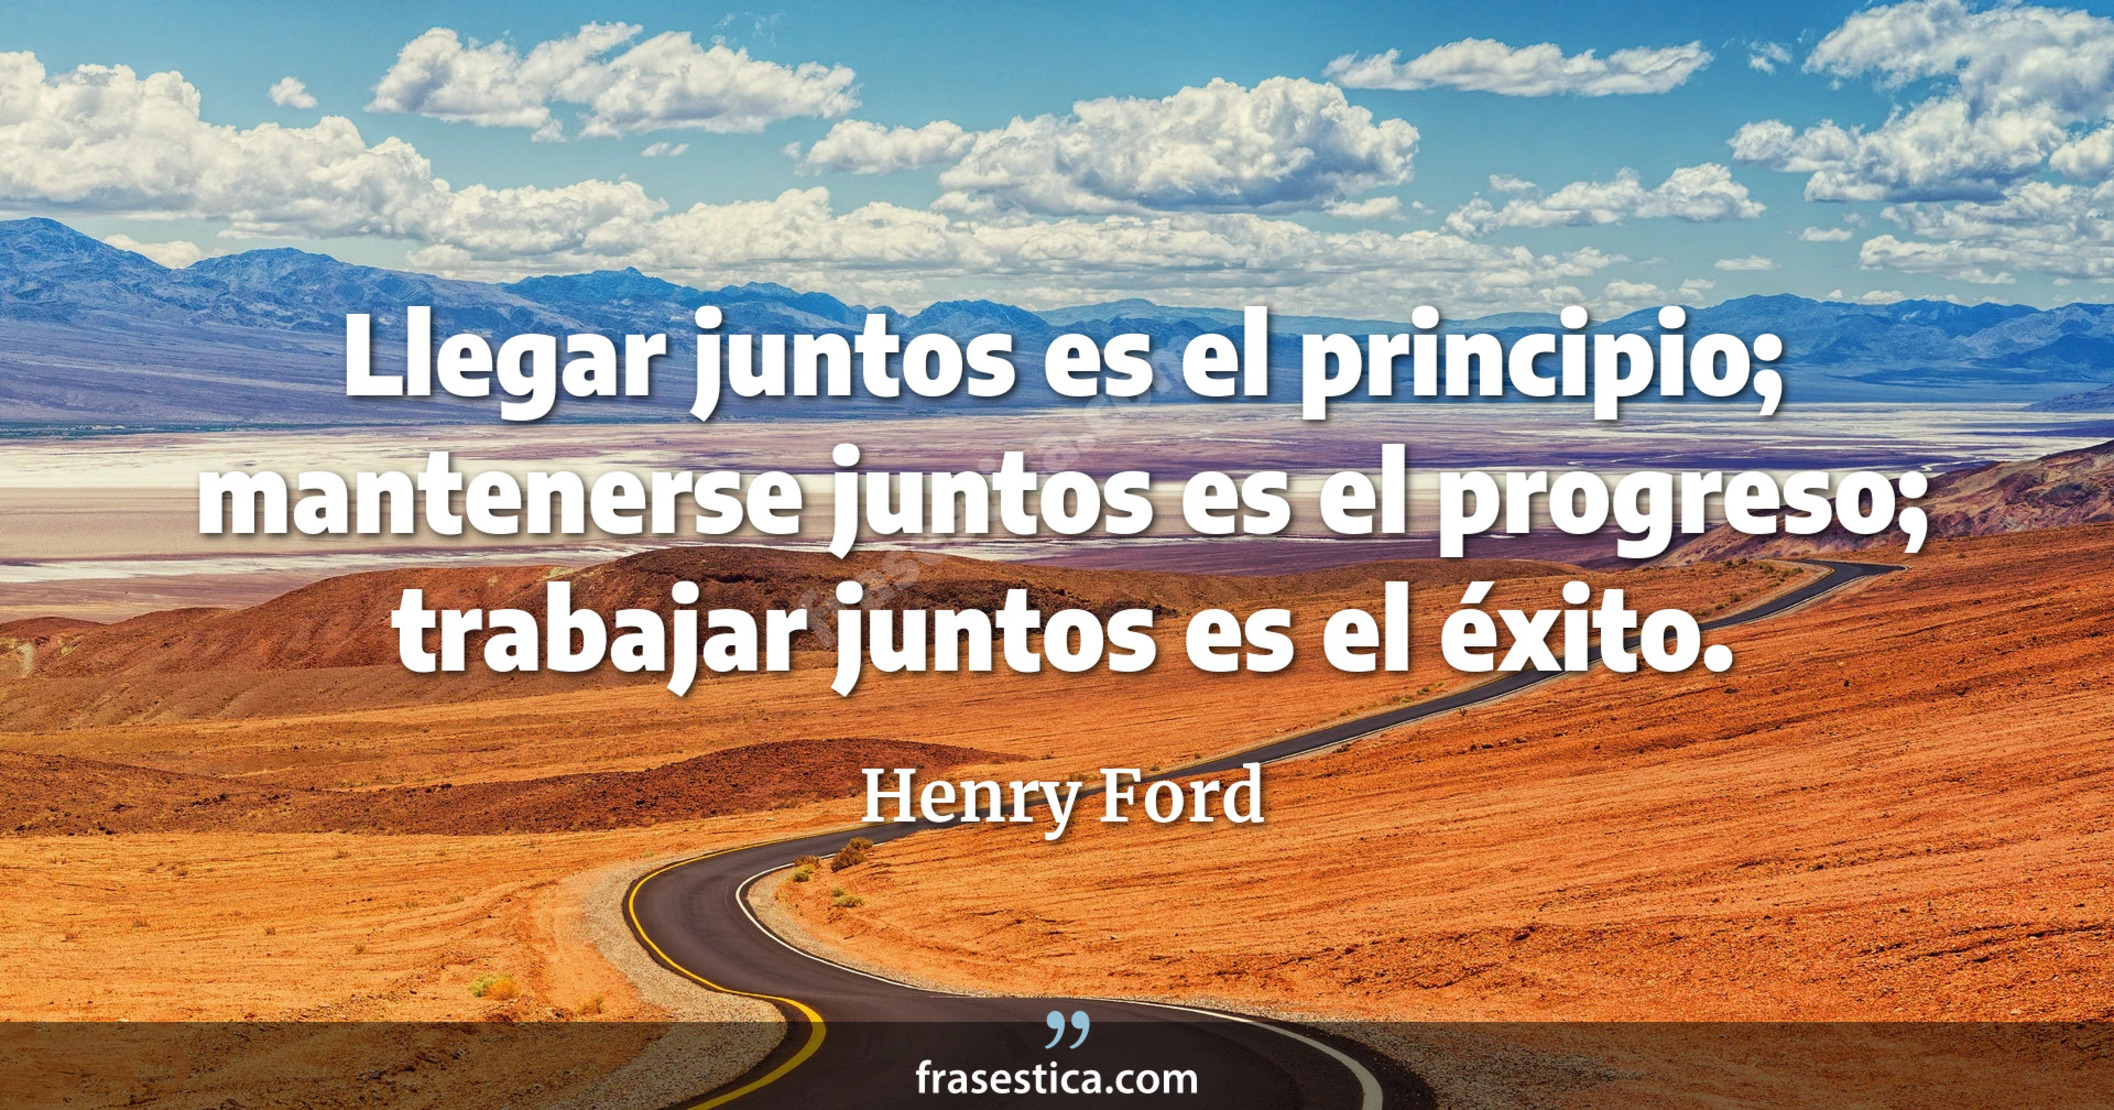 Llegar juntos es el principio; mantenerse juntos es el progreso; trabajar juntos es el éxito. - Henry Ford